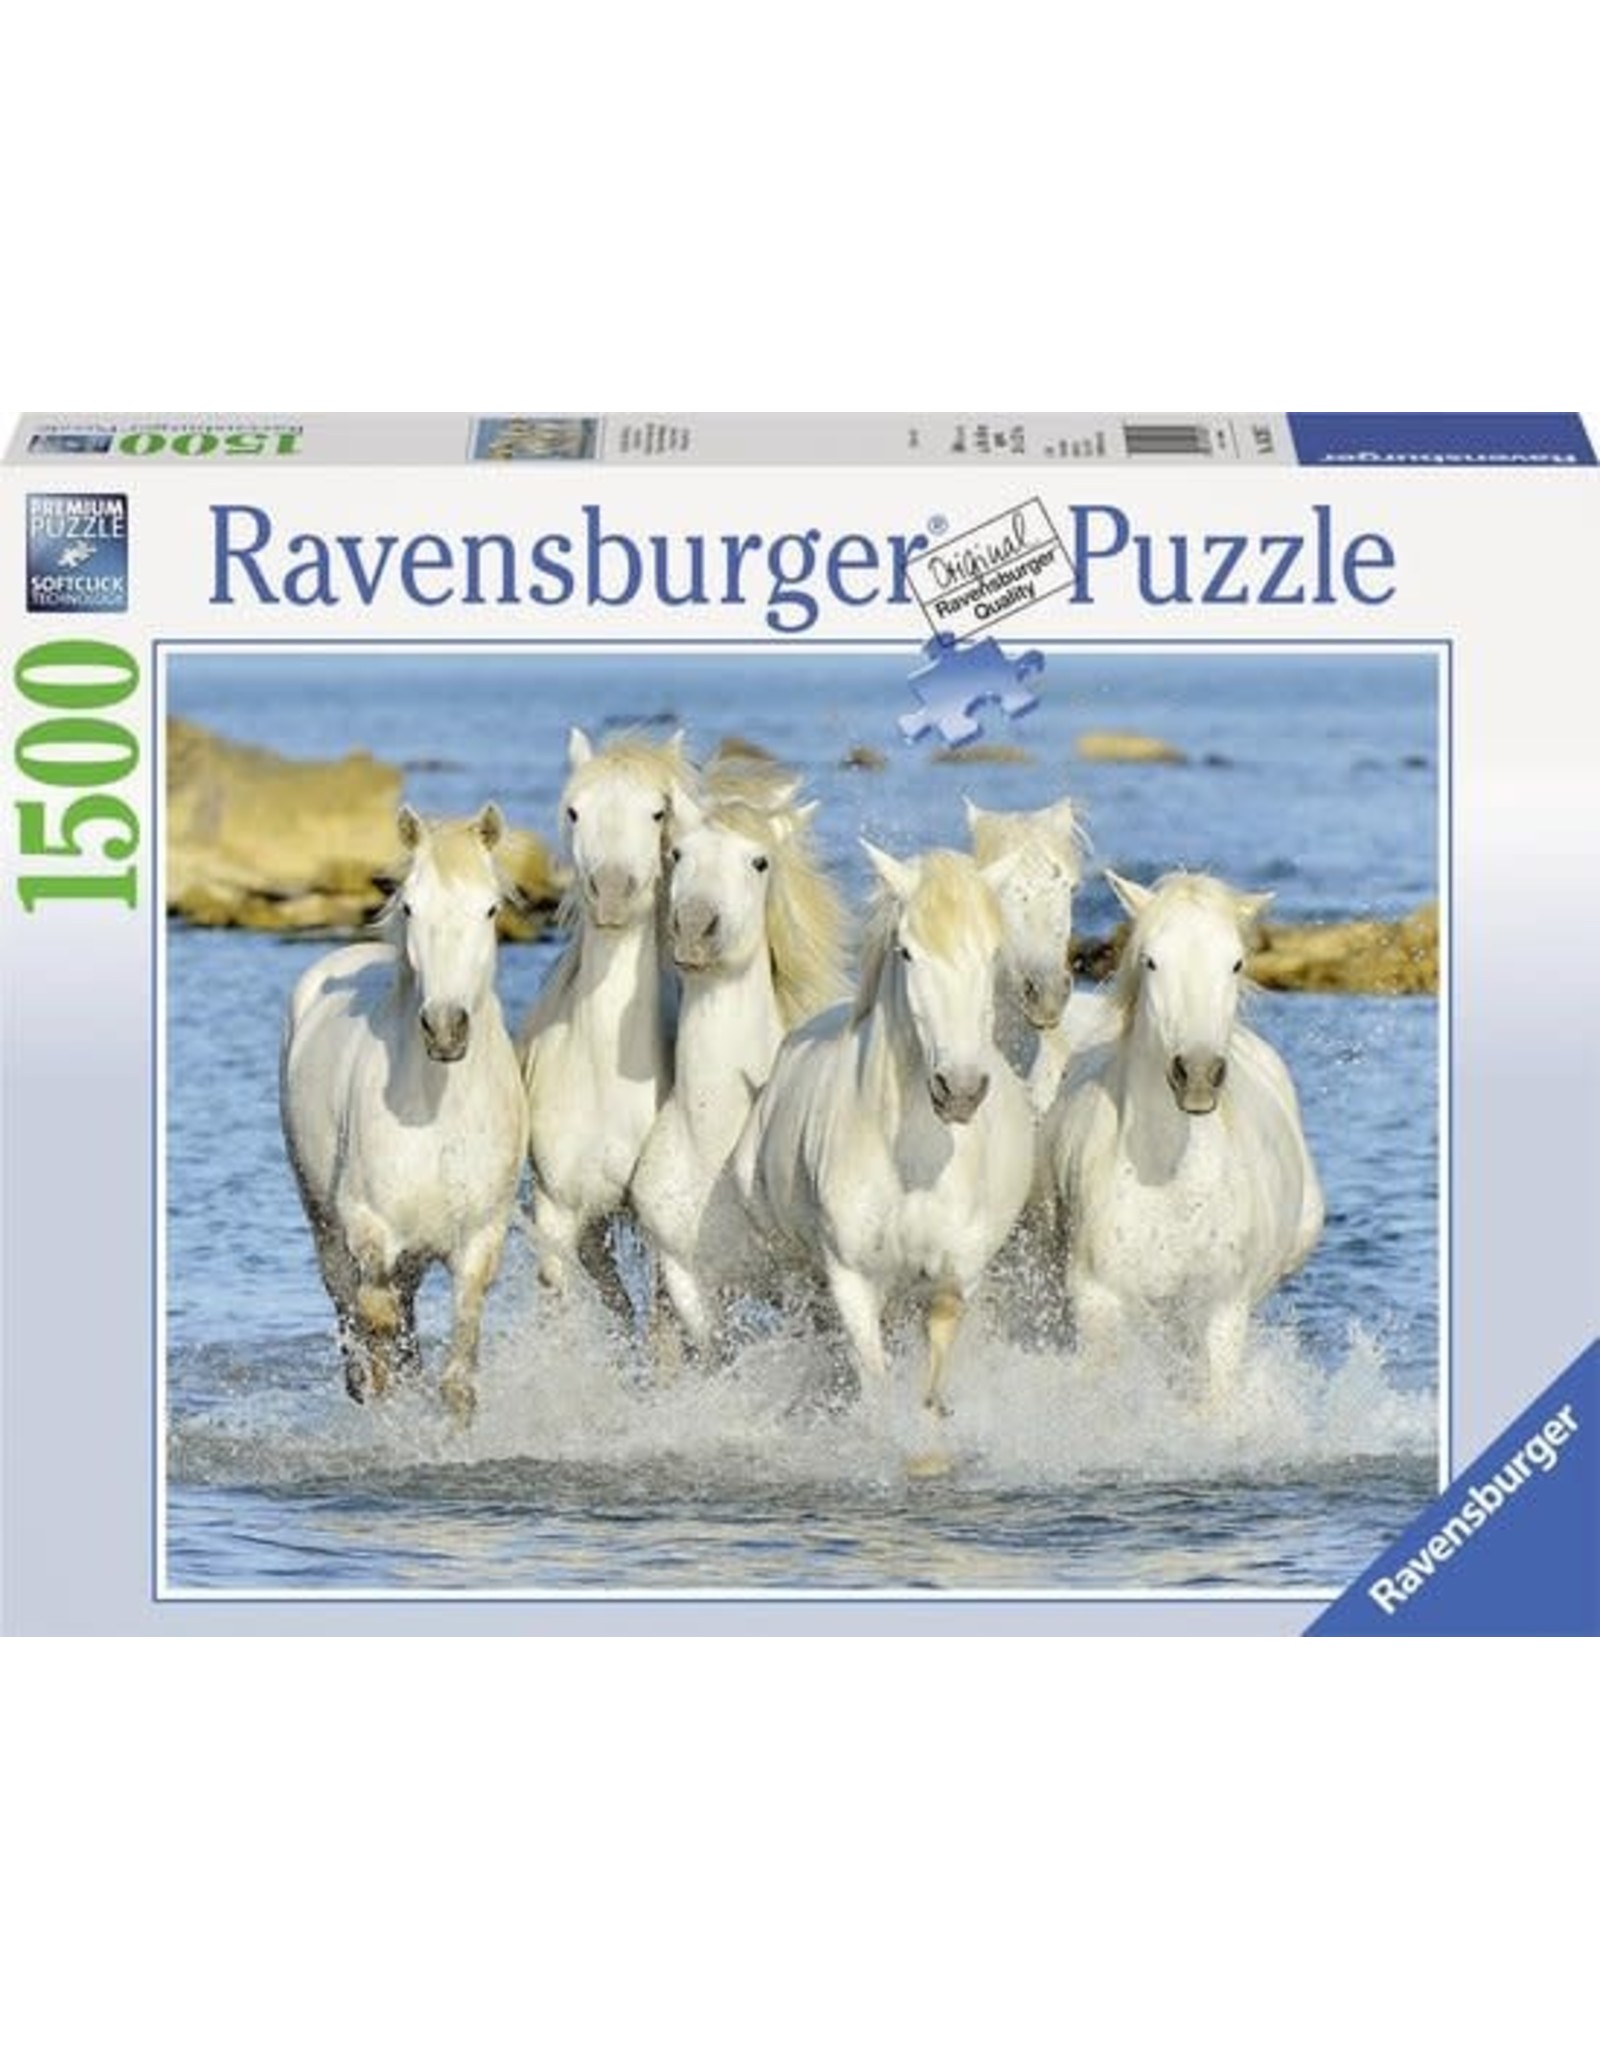 Ravensburger Ravensburger puzzel 162857 Spetterende Verfrissing 1500 stukjes